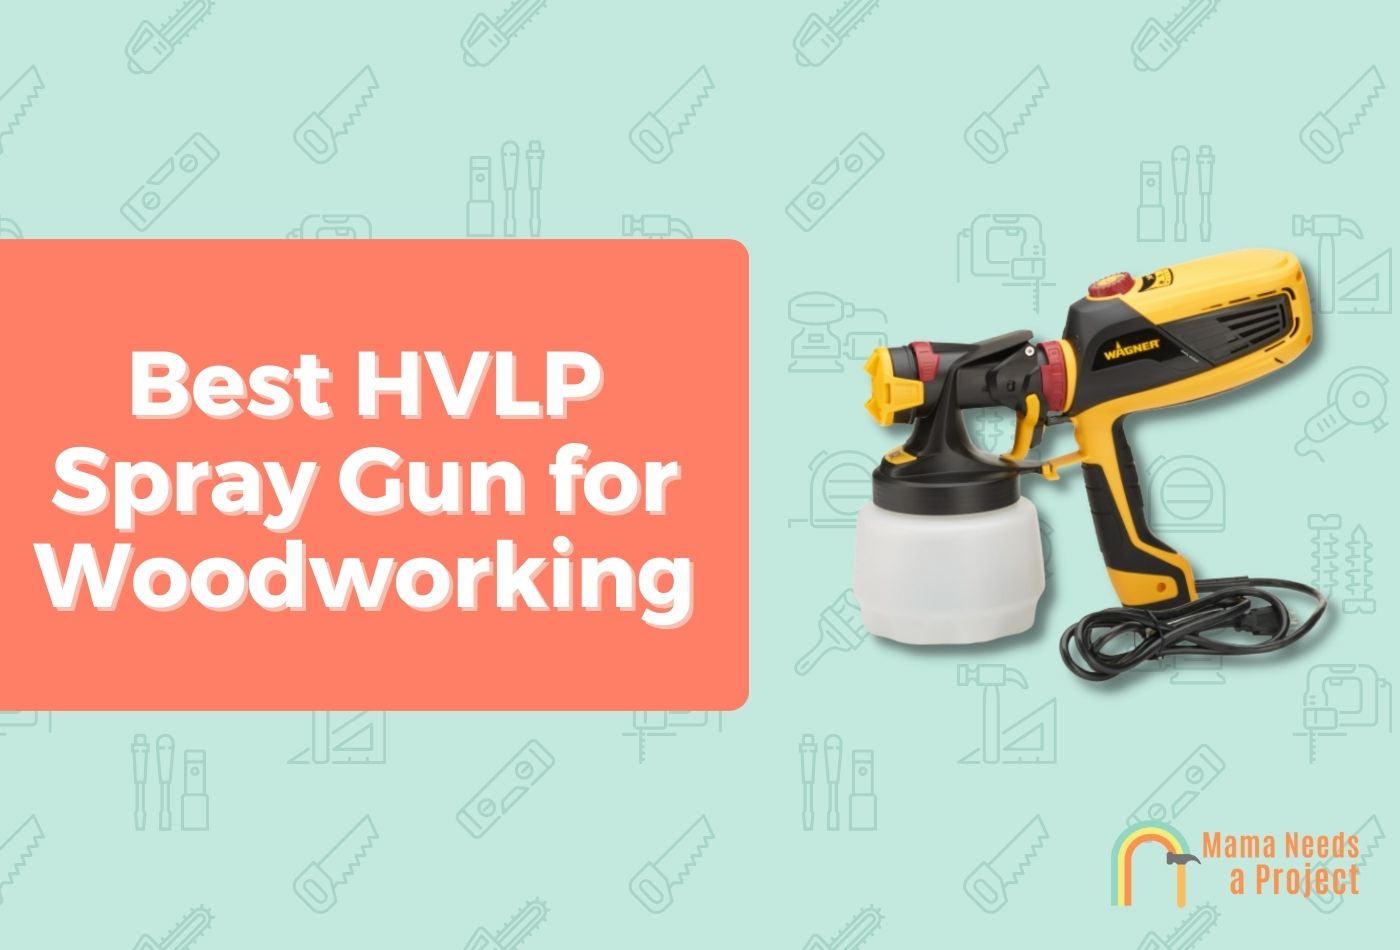 Best HVLP Spray Gun for Woodworking